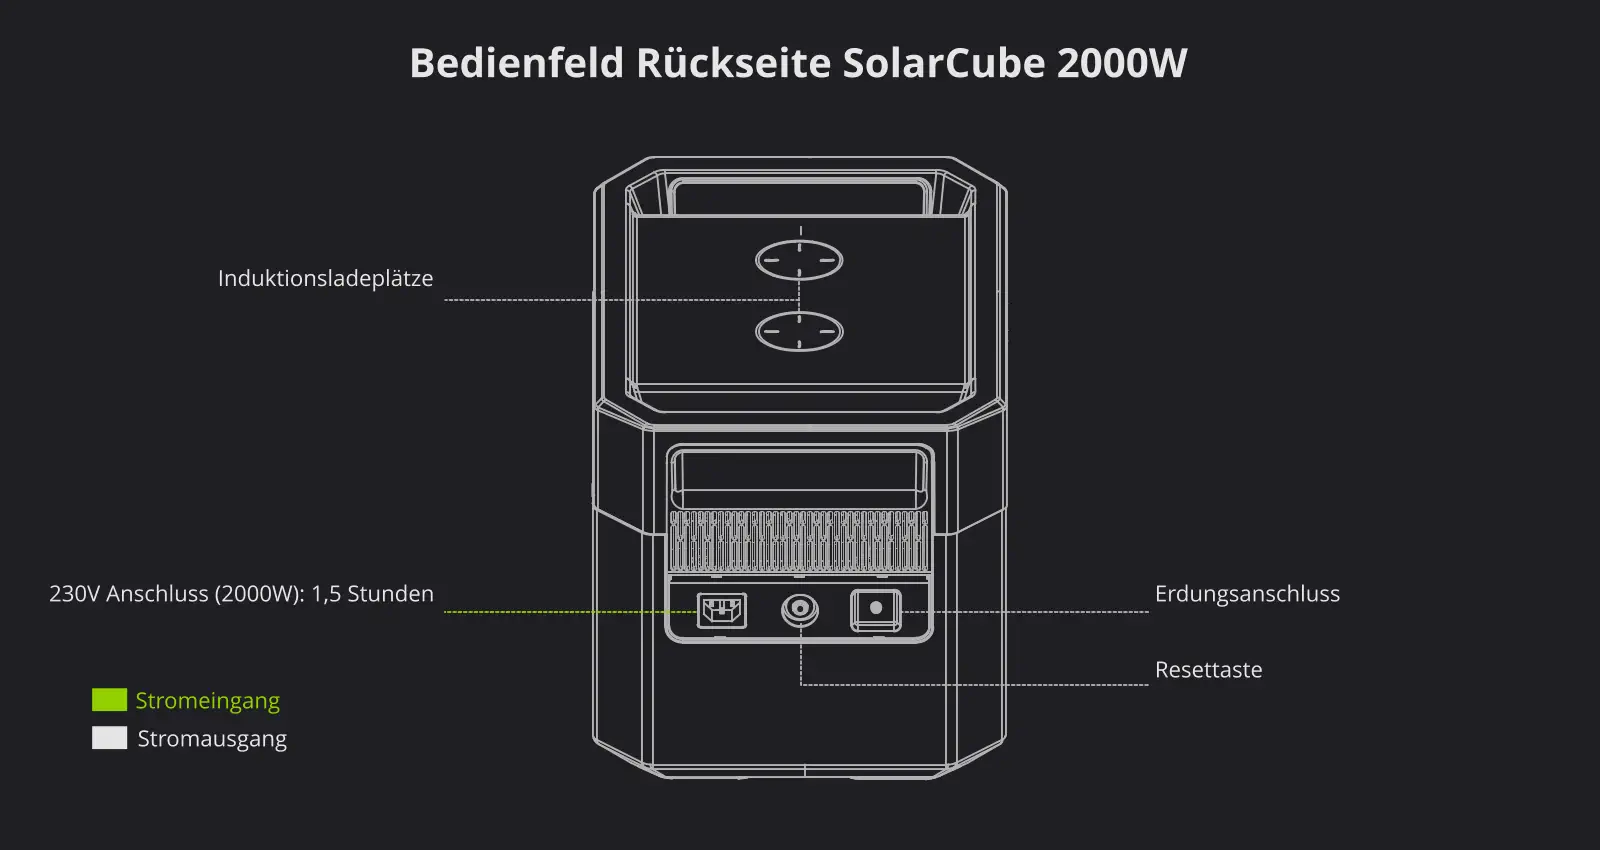 Poerstation-SolarCube 2000W Bedienfeld Rückseite